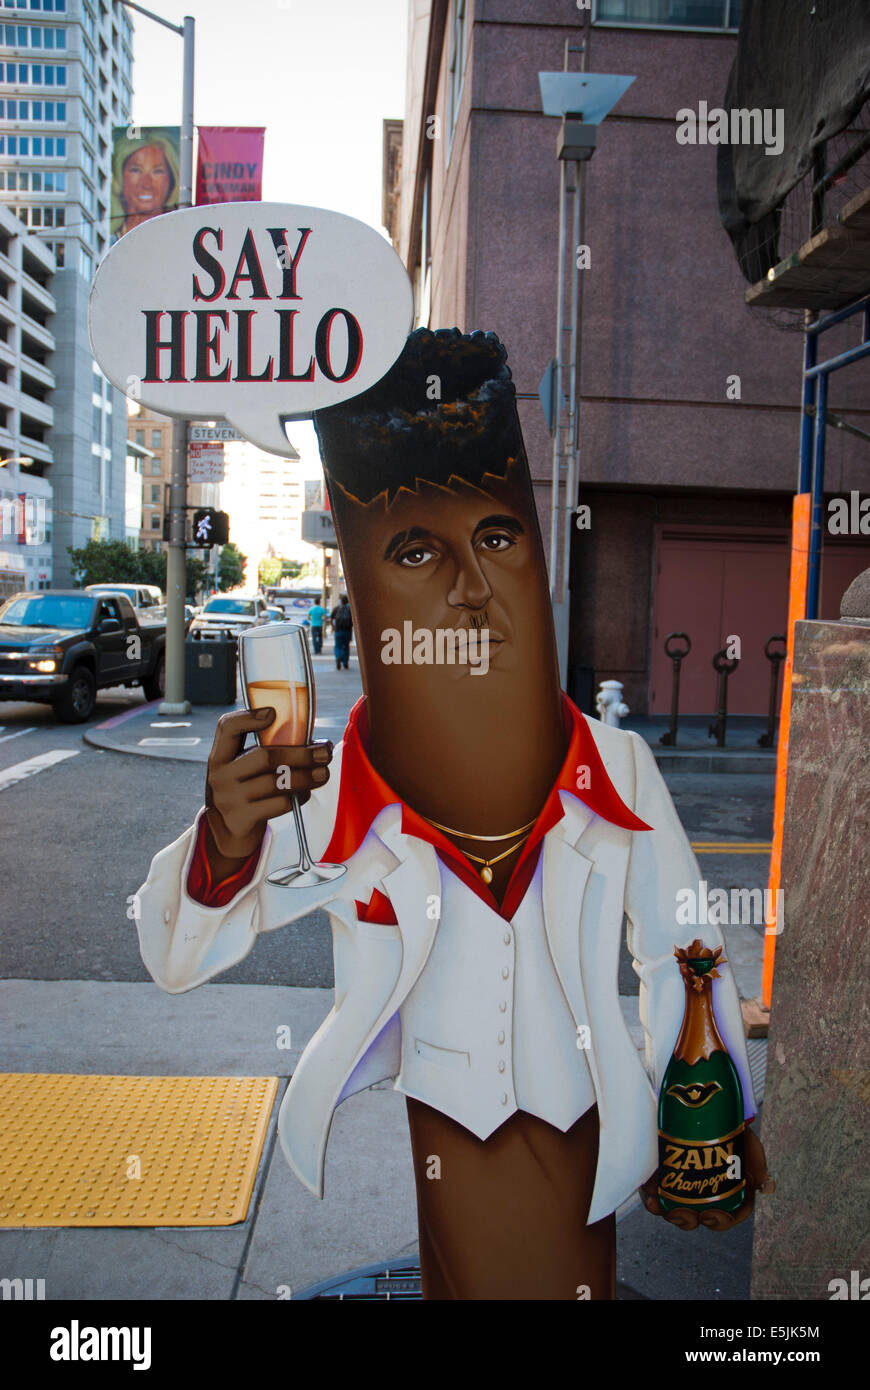 Cigar shop sign, Al Pacino as Scarface. San Francisco USA Stock Photo